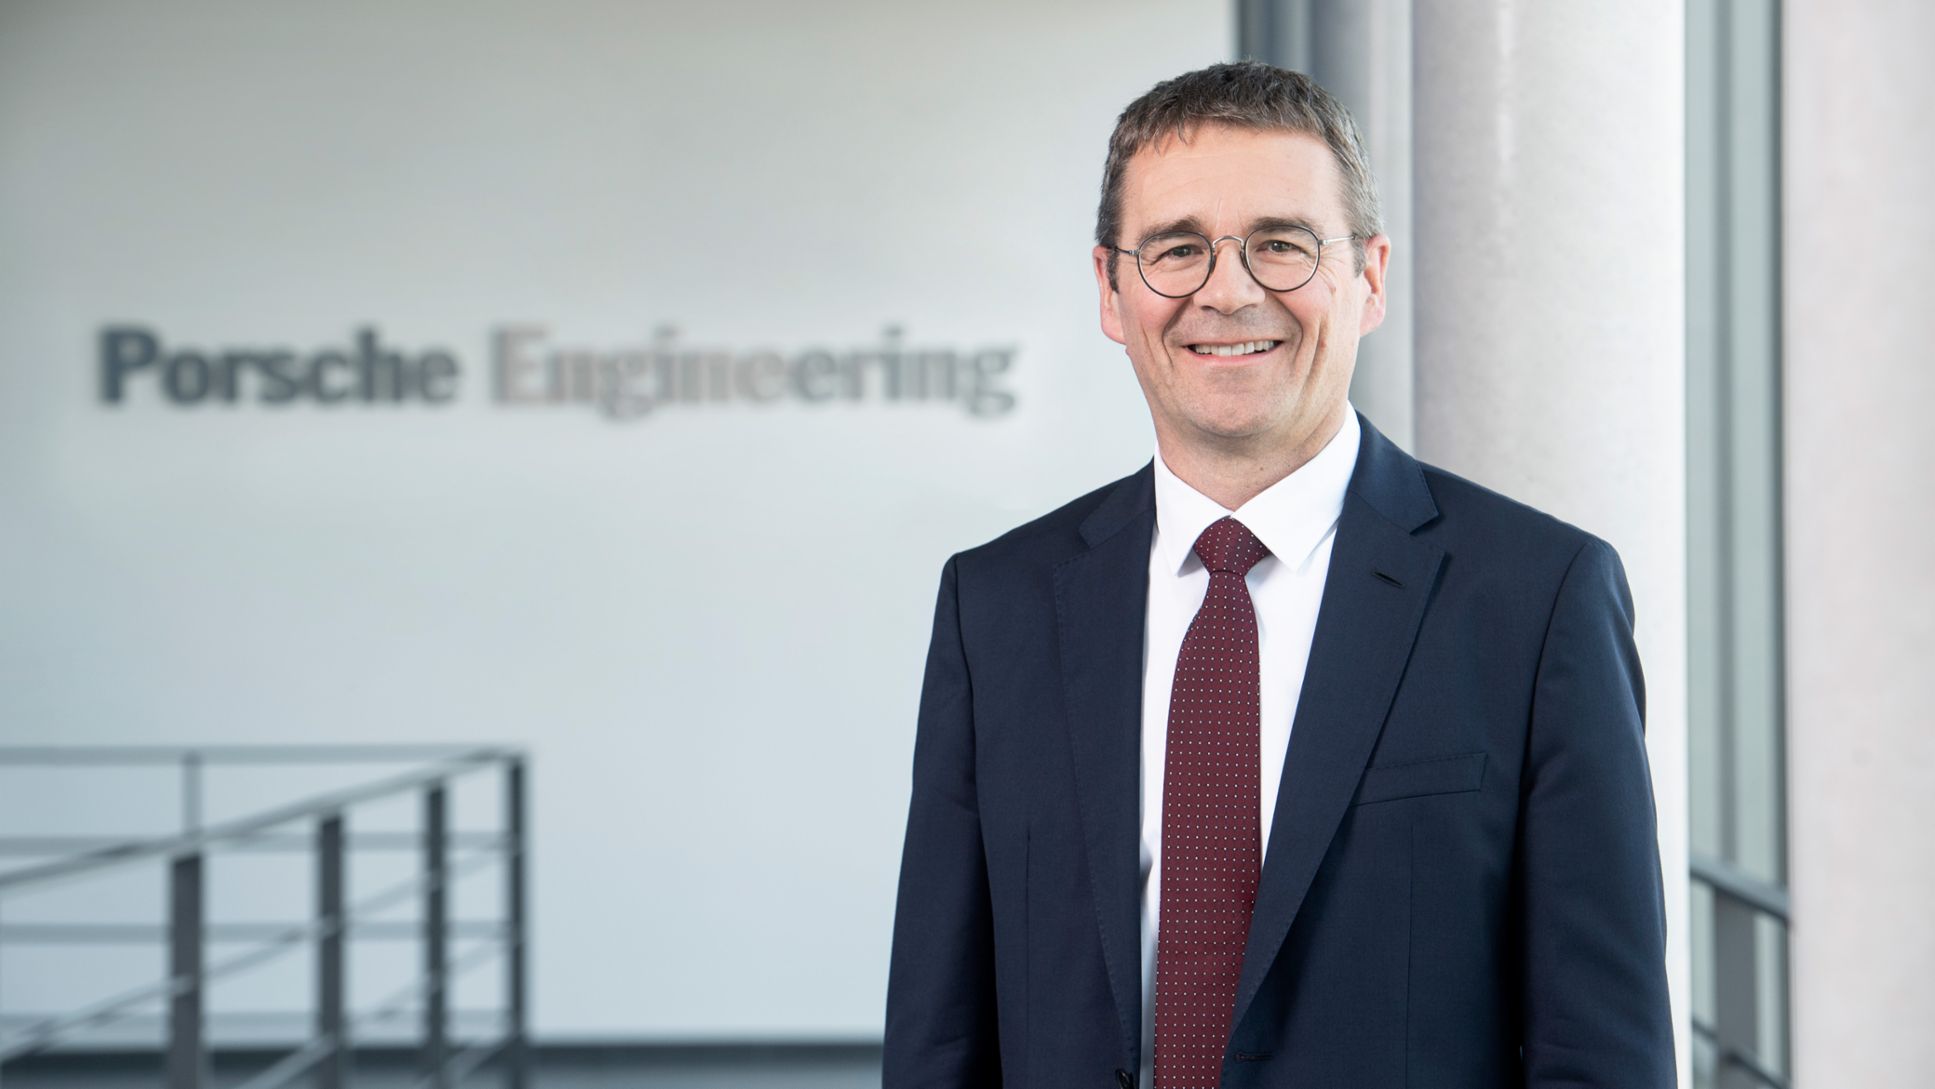 Dr. Peter Schäfer, Chairman of the Management Board of Porsche Engineering, 2019, Porsche AG